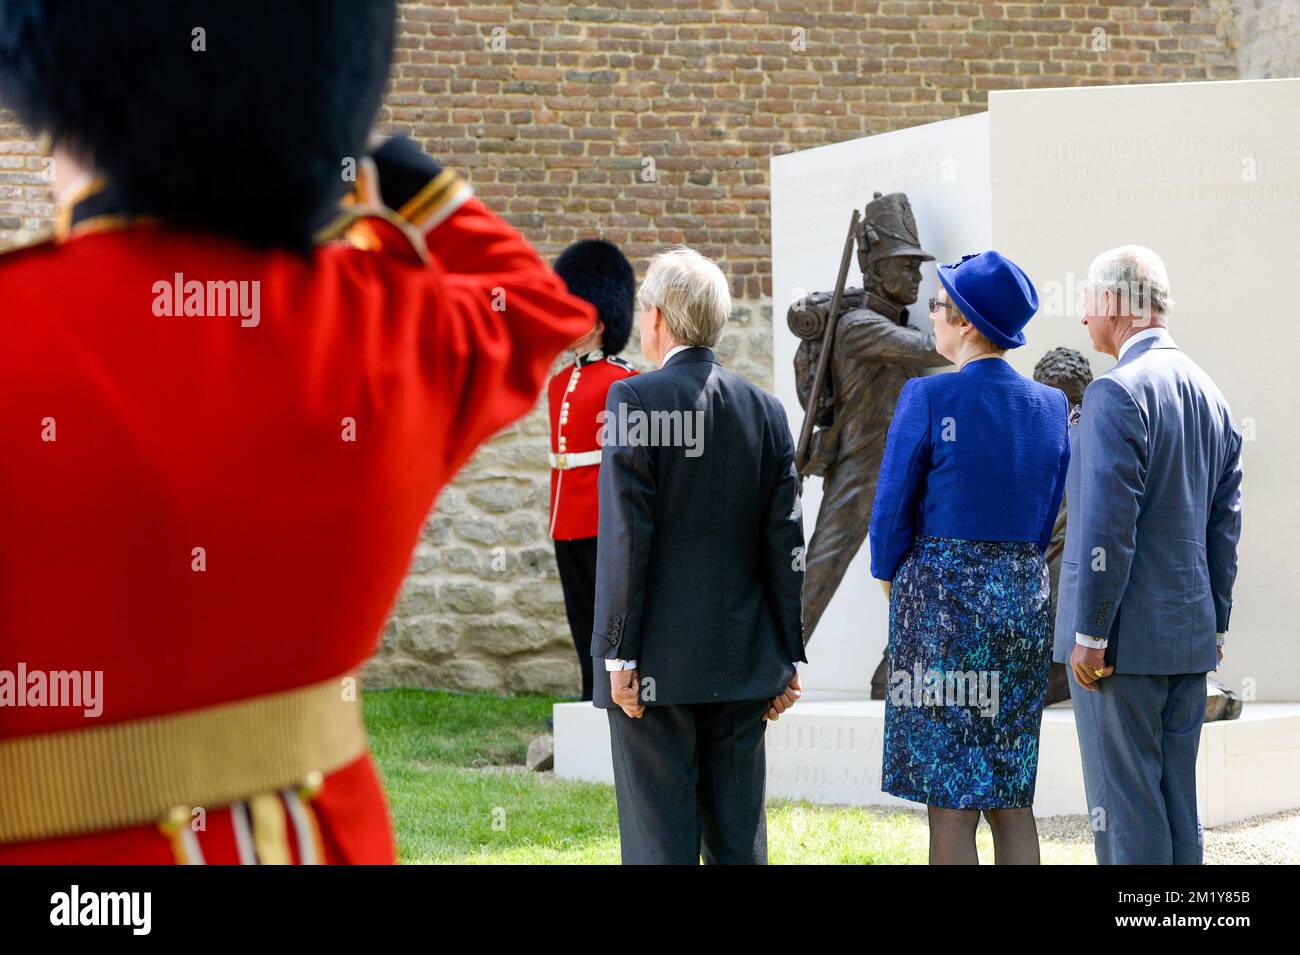 20150617 - WATERLOO, BELGIQUE: Le Prince Charles de Grande-Bretagne, Prince de Galles (R) photographié lors de l'inauguration du site commémoratif de la ferme d'Hougoumont (ferme Hougoumont - de boerderij van Hougoumont), qui fait partie des commémorations du bicentenaire de la bataille de Waterloo, le mercredi 17 juin 2015 à Waterloo. La ferme a été l'un des endroits clés de la bataille de Waterloo sur 18 juin 1815, dont l'anniversaire de 200th est célébré cette année. Quelque 5 000 reacteurs, 300 chevaux et 100 canons reconstruiront la bataille légendaire au cours de laquelle le duc de Wellington remporta un vi définitif Banque D'Images